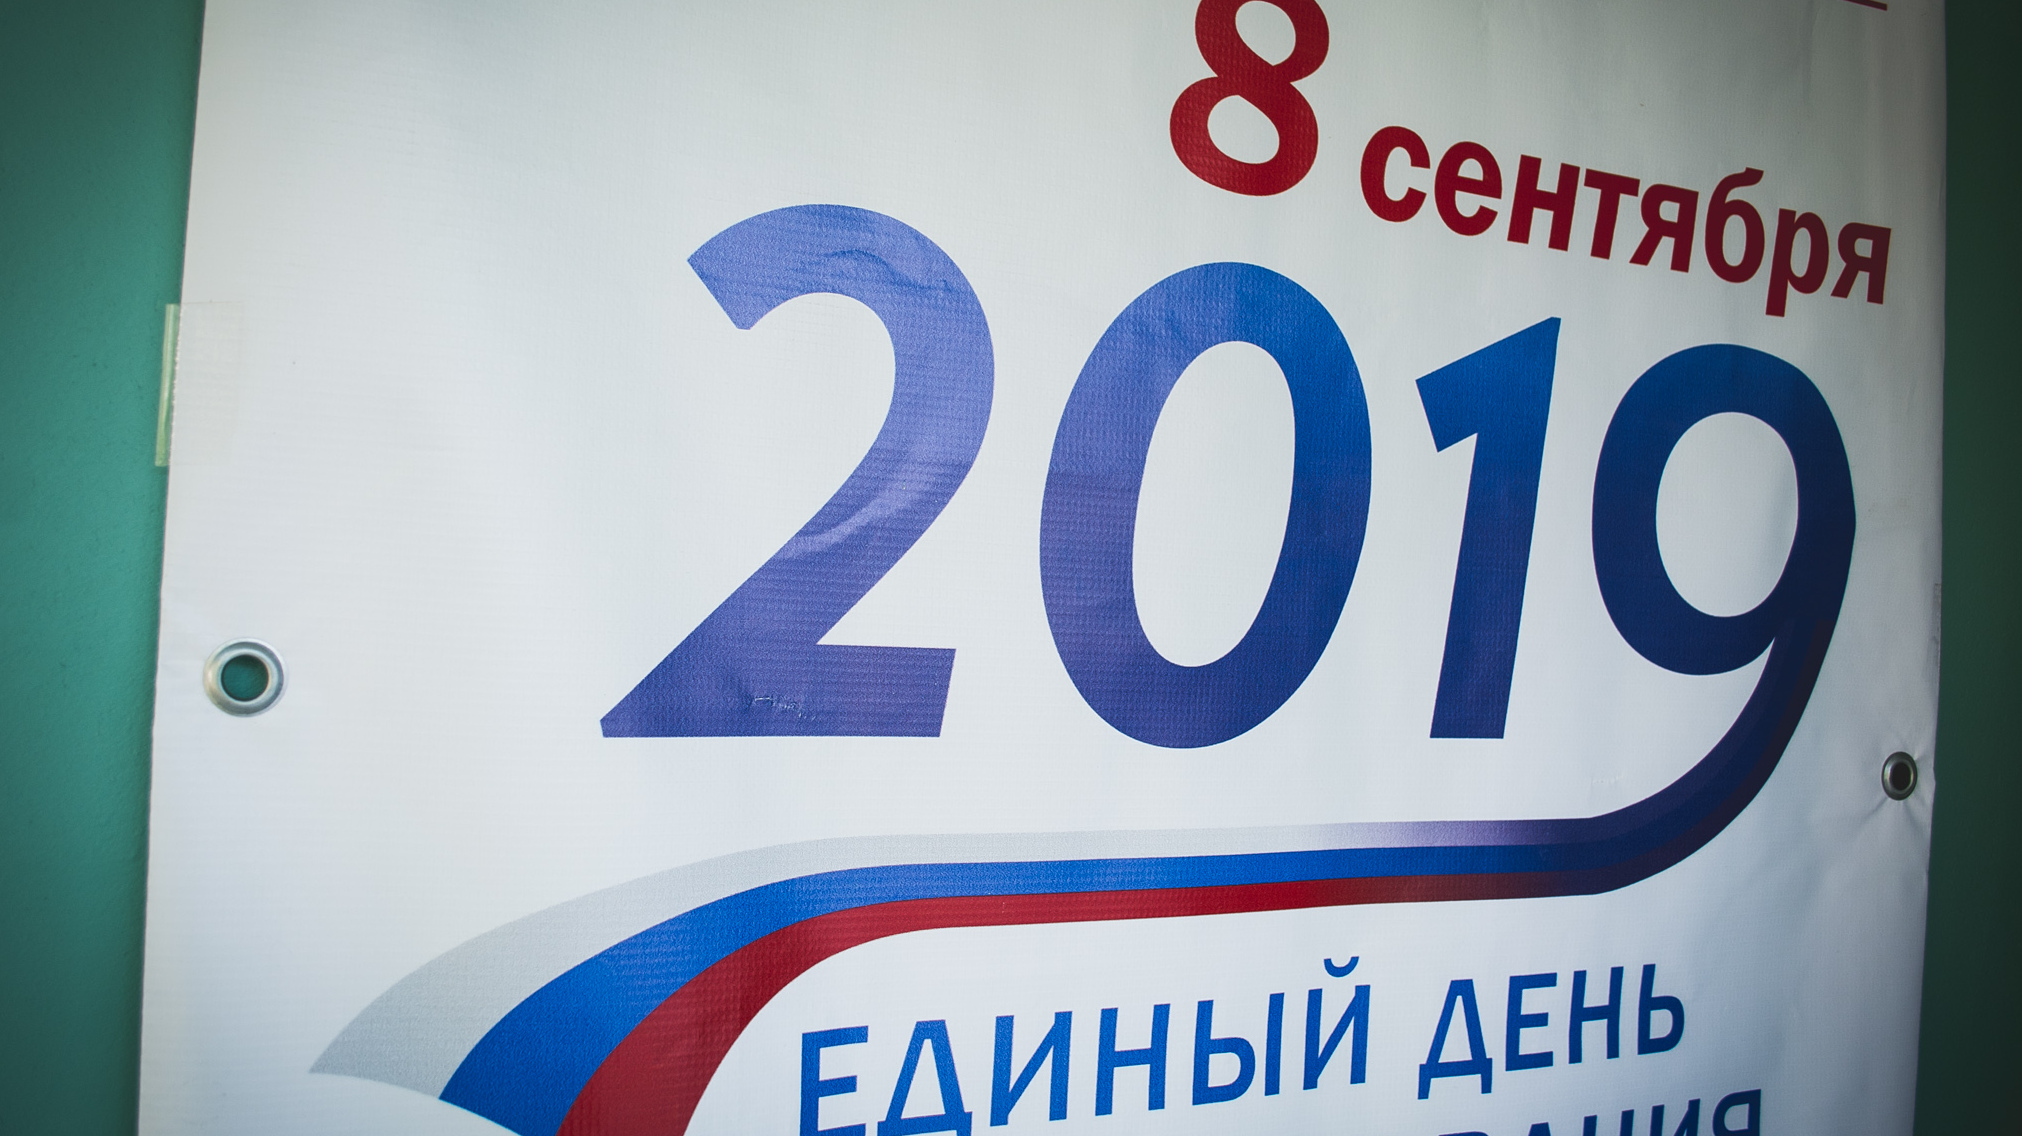 Тюменская область потратила 24,5 млн рублей на довыборы с рекордно низкой явкой